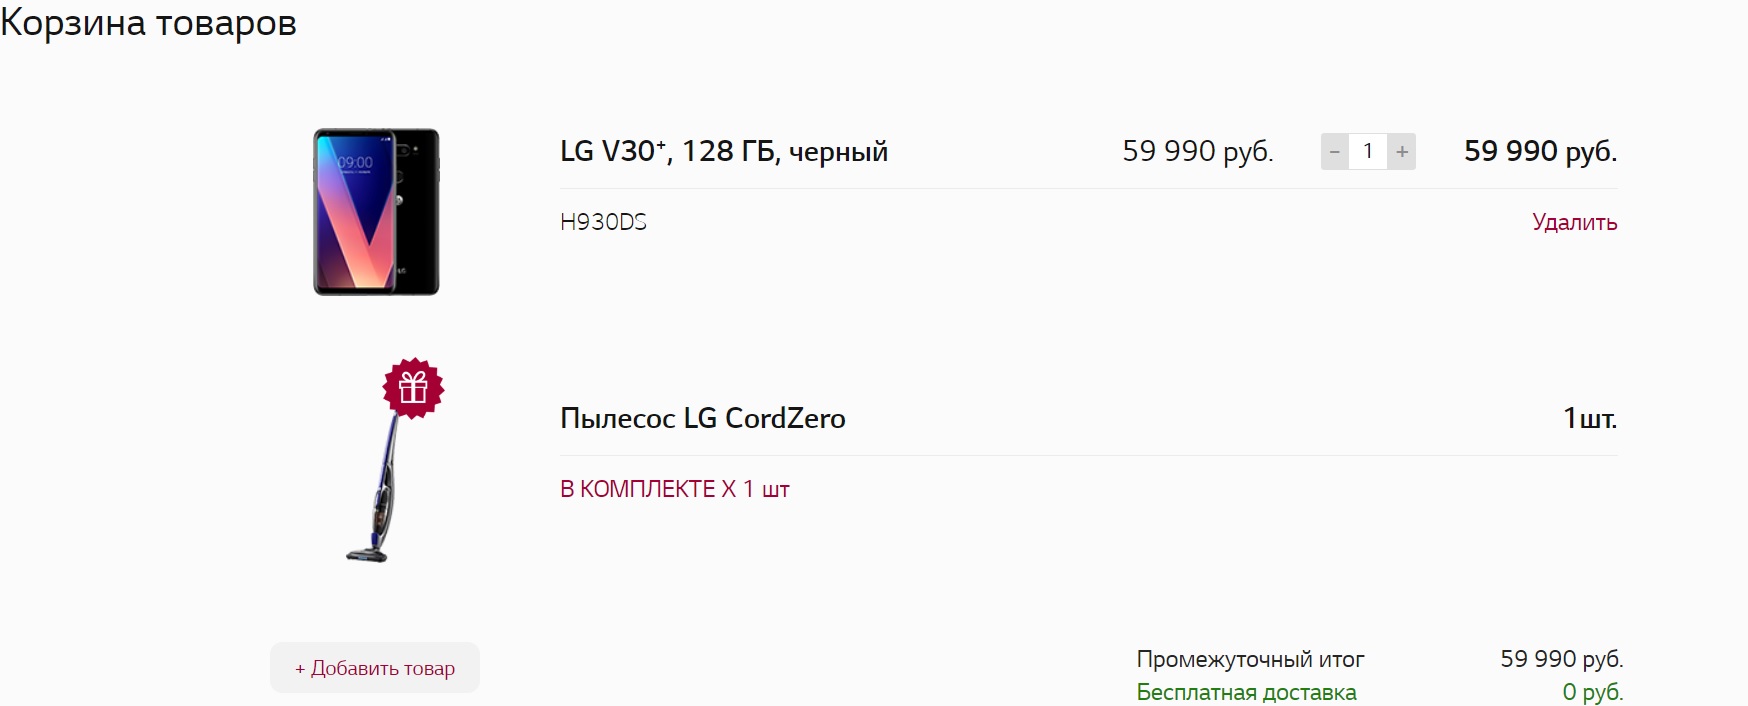 За покупку LG V30+ 128 ГБ LG дарит телевизор или пылесос